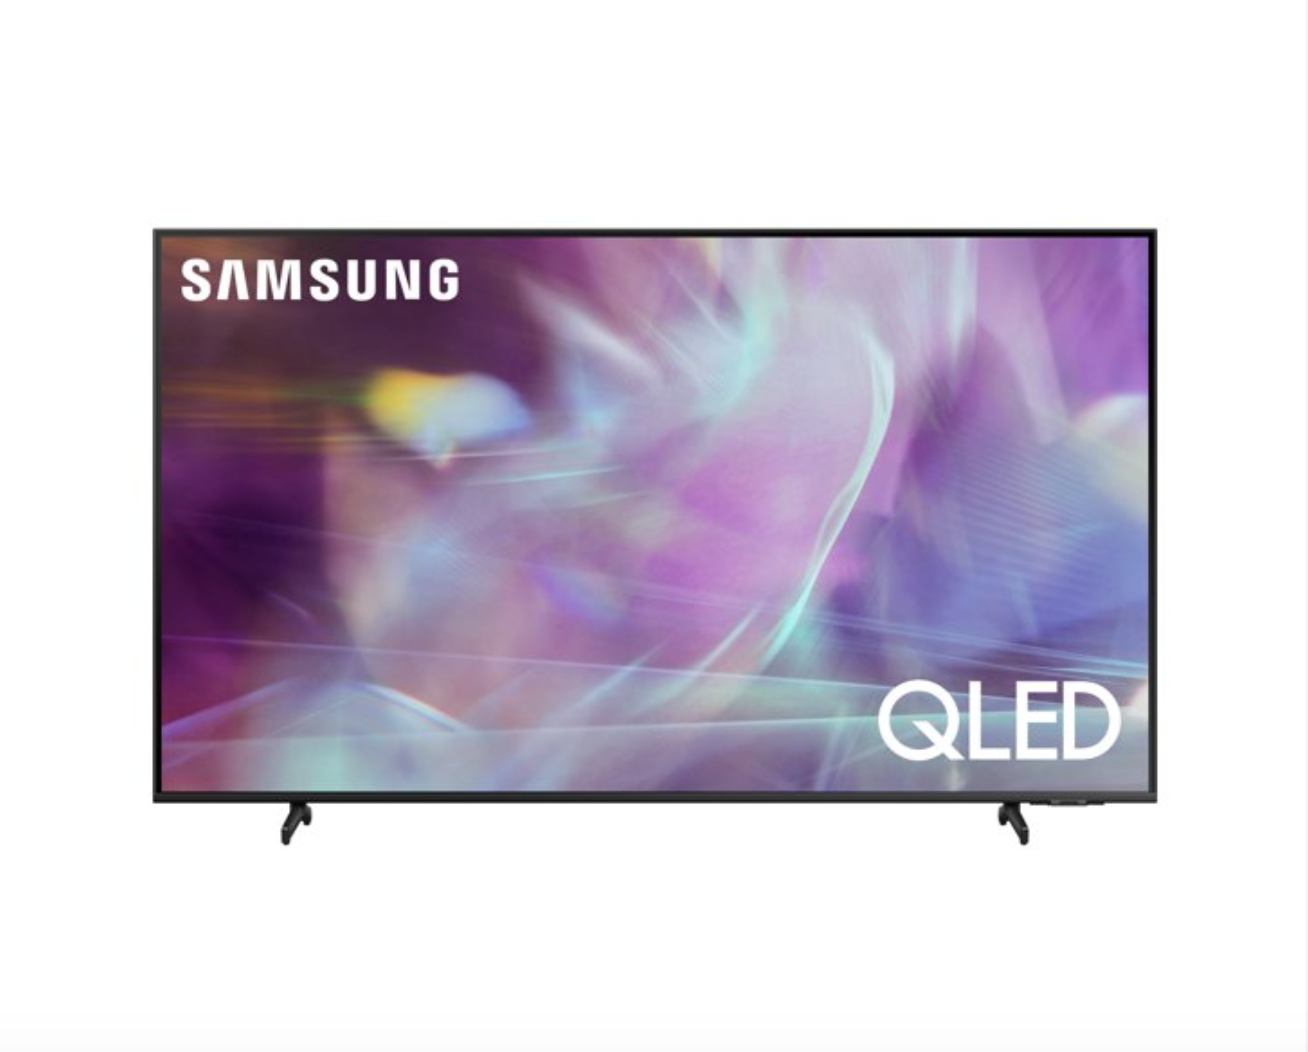 Samsung 60" QLED 4K Smart TV